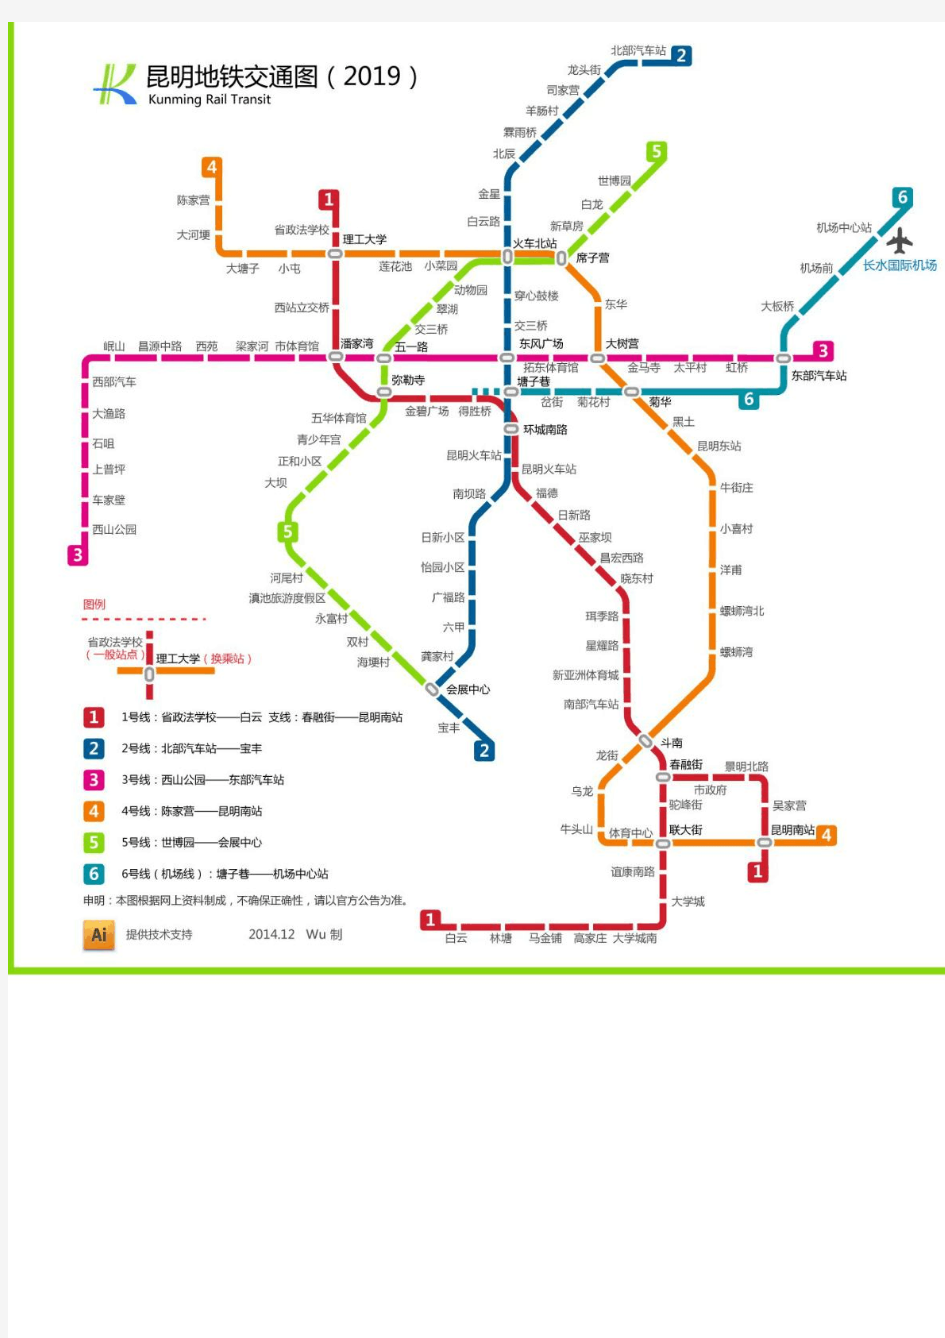 昆明地铁交通规划图(至2019年)